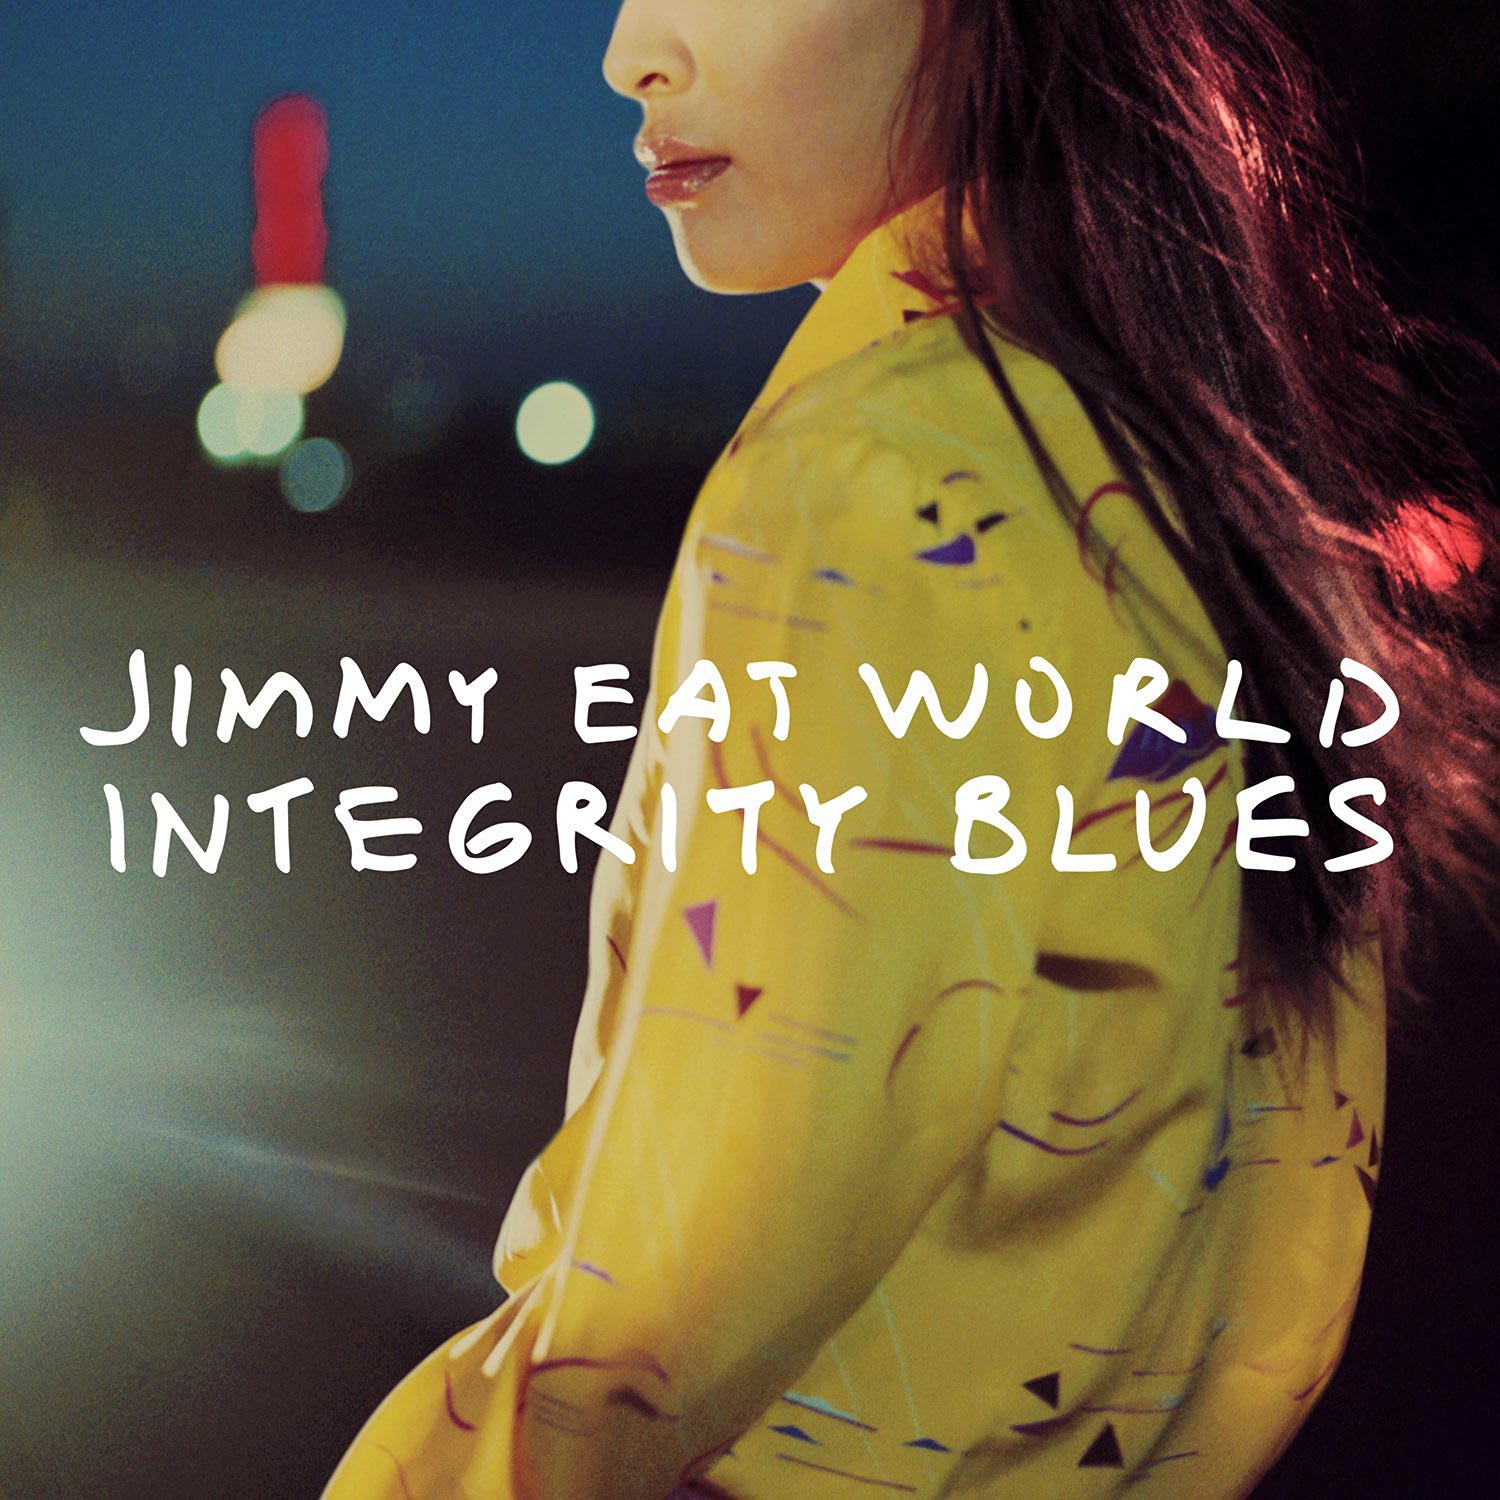 Jimmy Eat World: Integrity blues, la portada del disco1500 x 1500